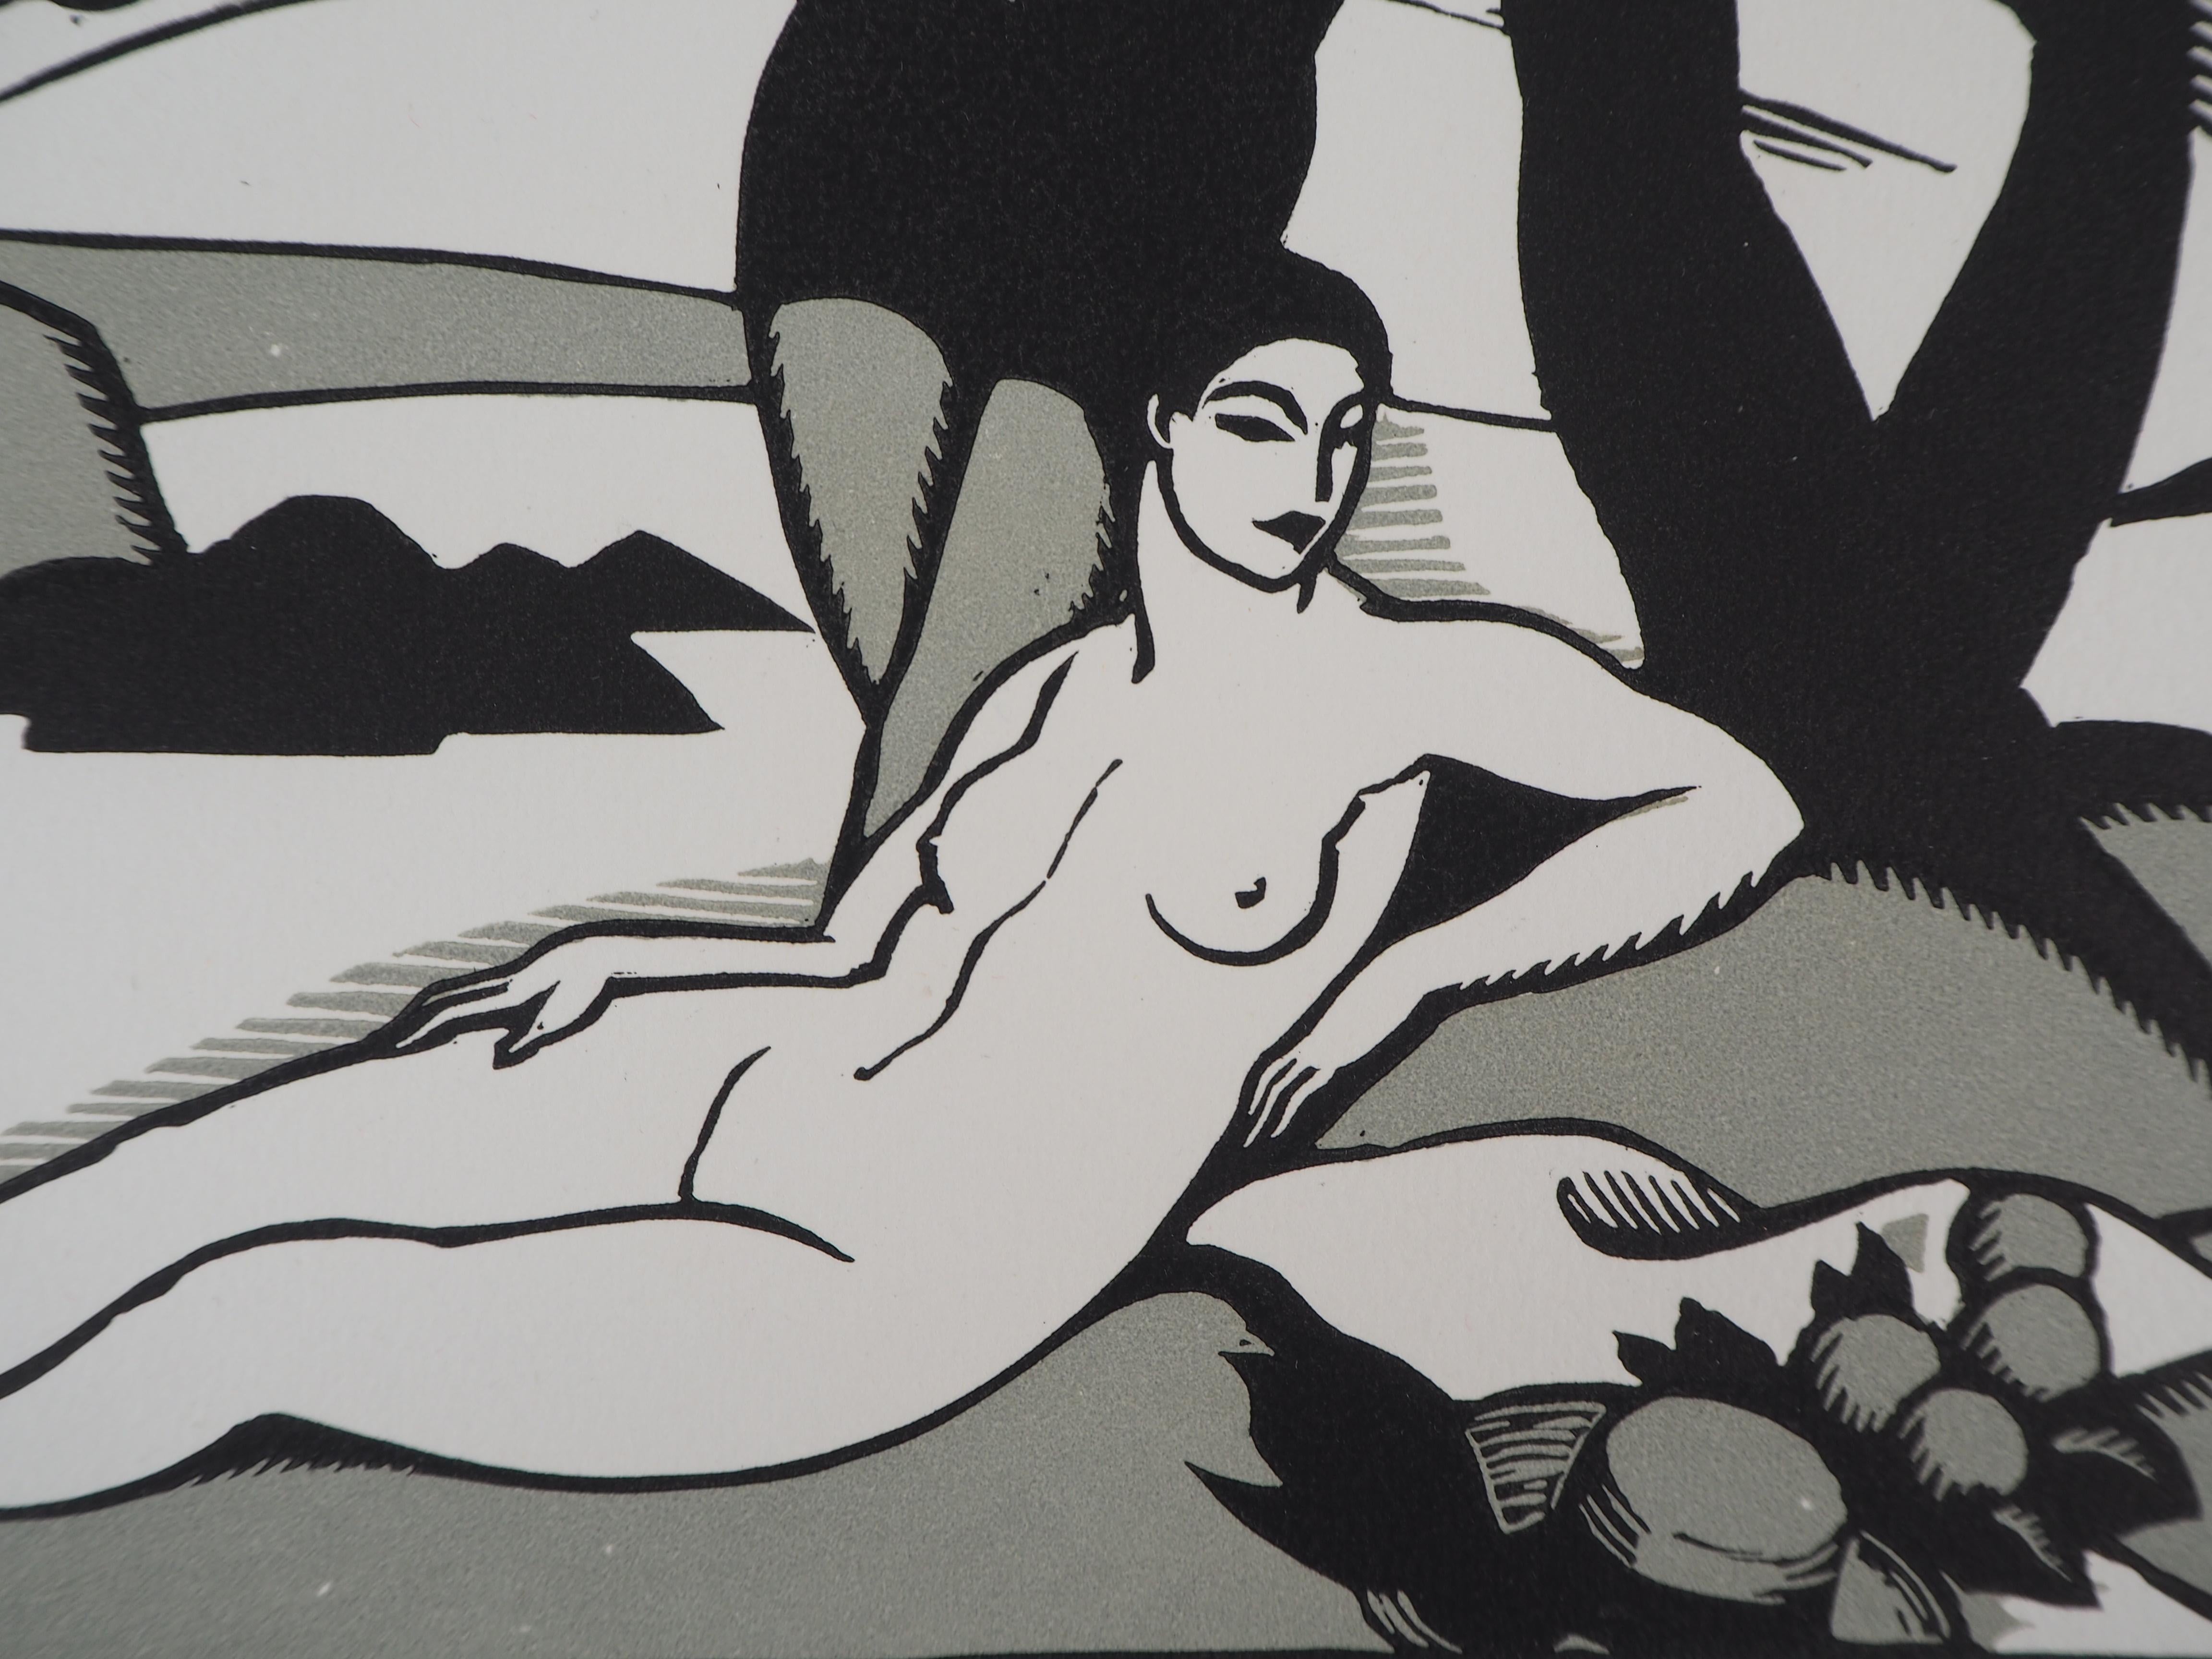 Charles Picart le Doux
Hommage an Cezanne : Die Badenden (Art Deco), 1923

Original Holzschnitt
Gedruckte Unterschrift auf der Platte
Nummeriert /154
Auf Pergament 32,5 x 25,5 cm (ca. 13 x 10 Zoll)
Trägt den Blindstempel des Herausgebers 'Imagier de